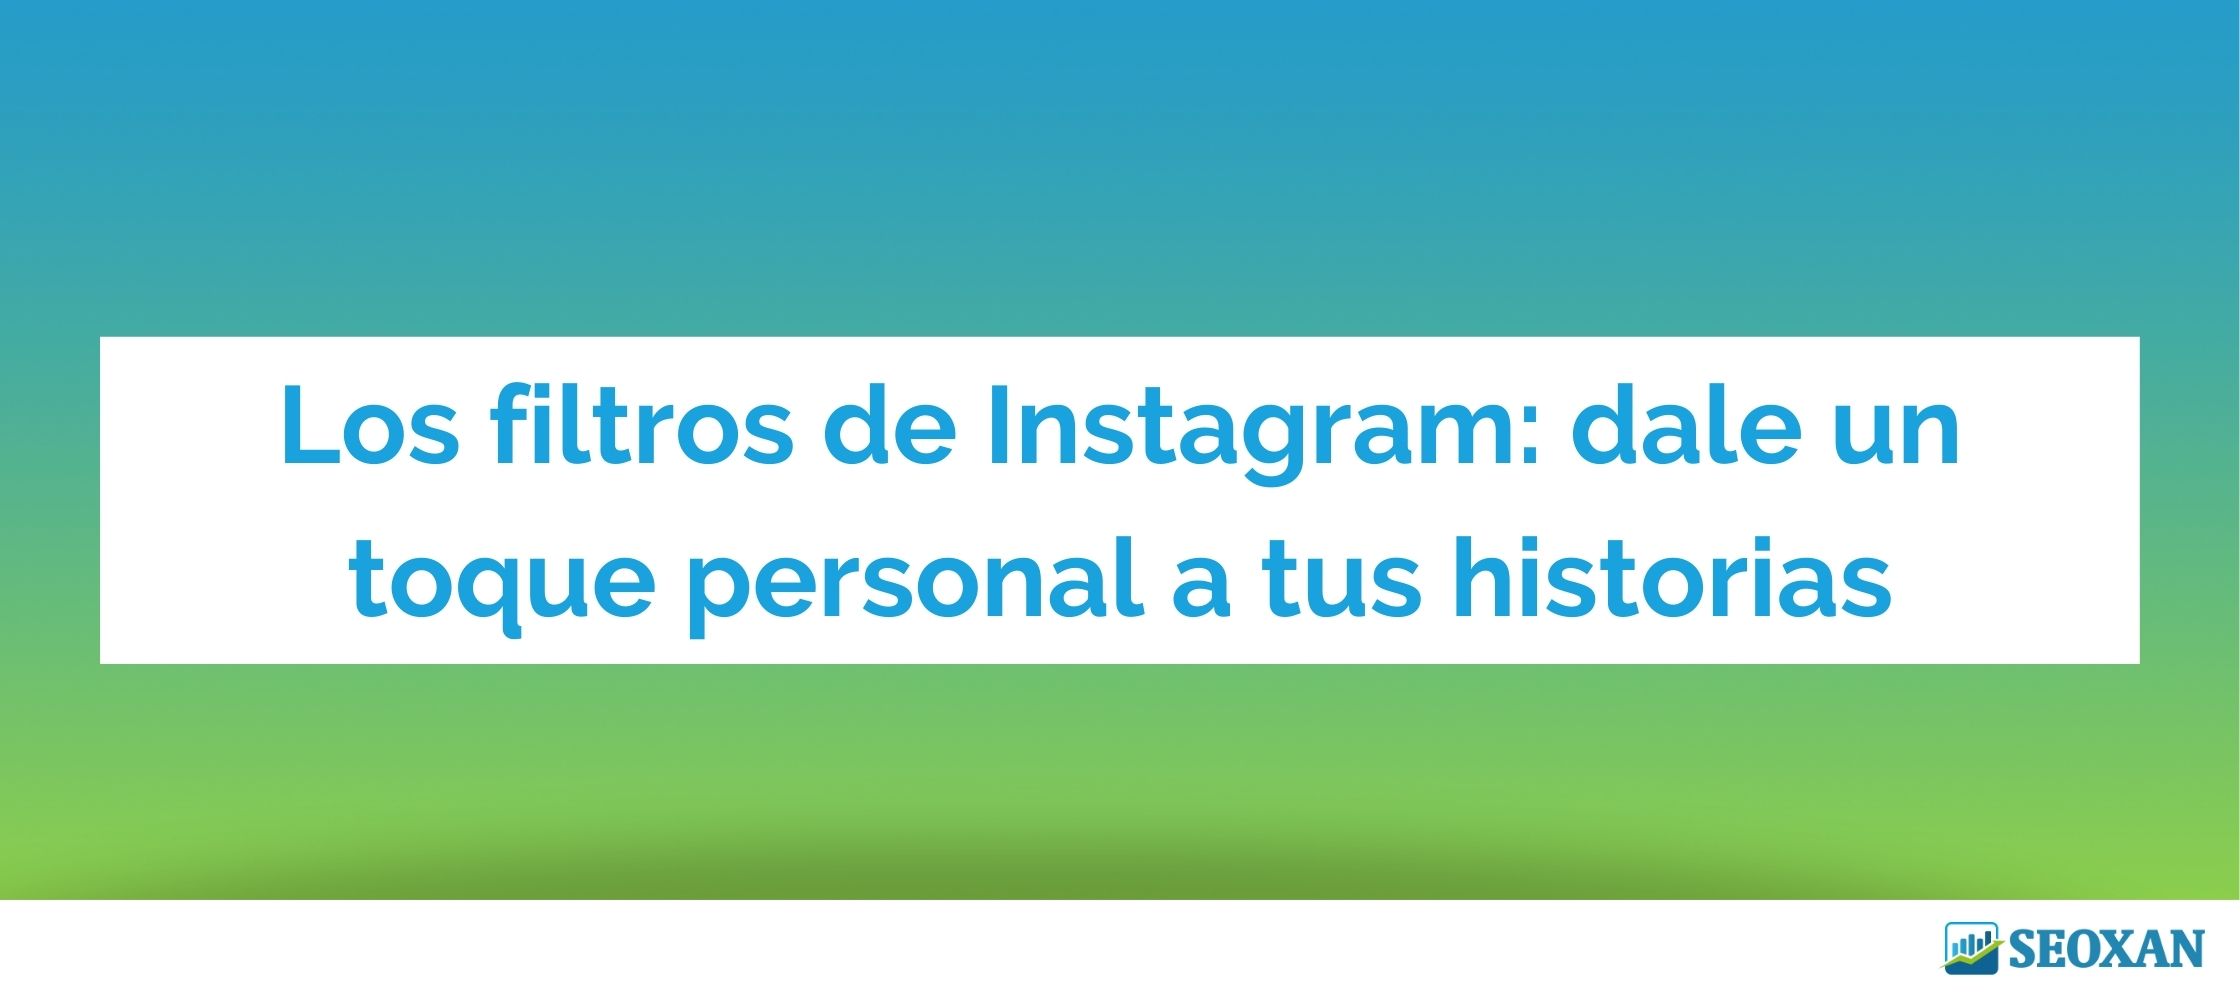 Los filtros de Instagram: dale un toque personal a tus historias